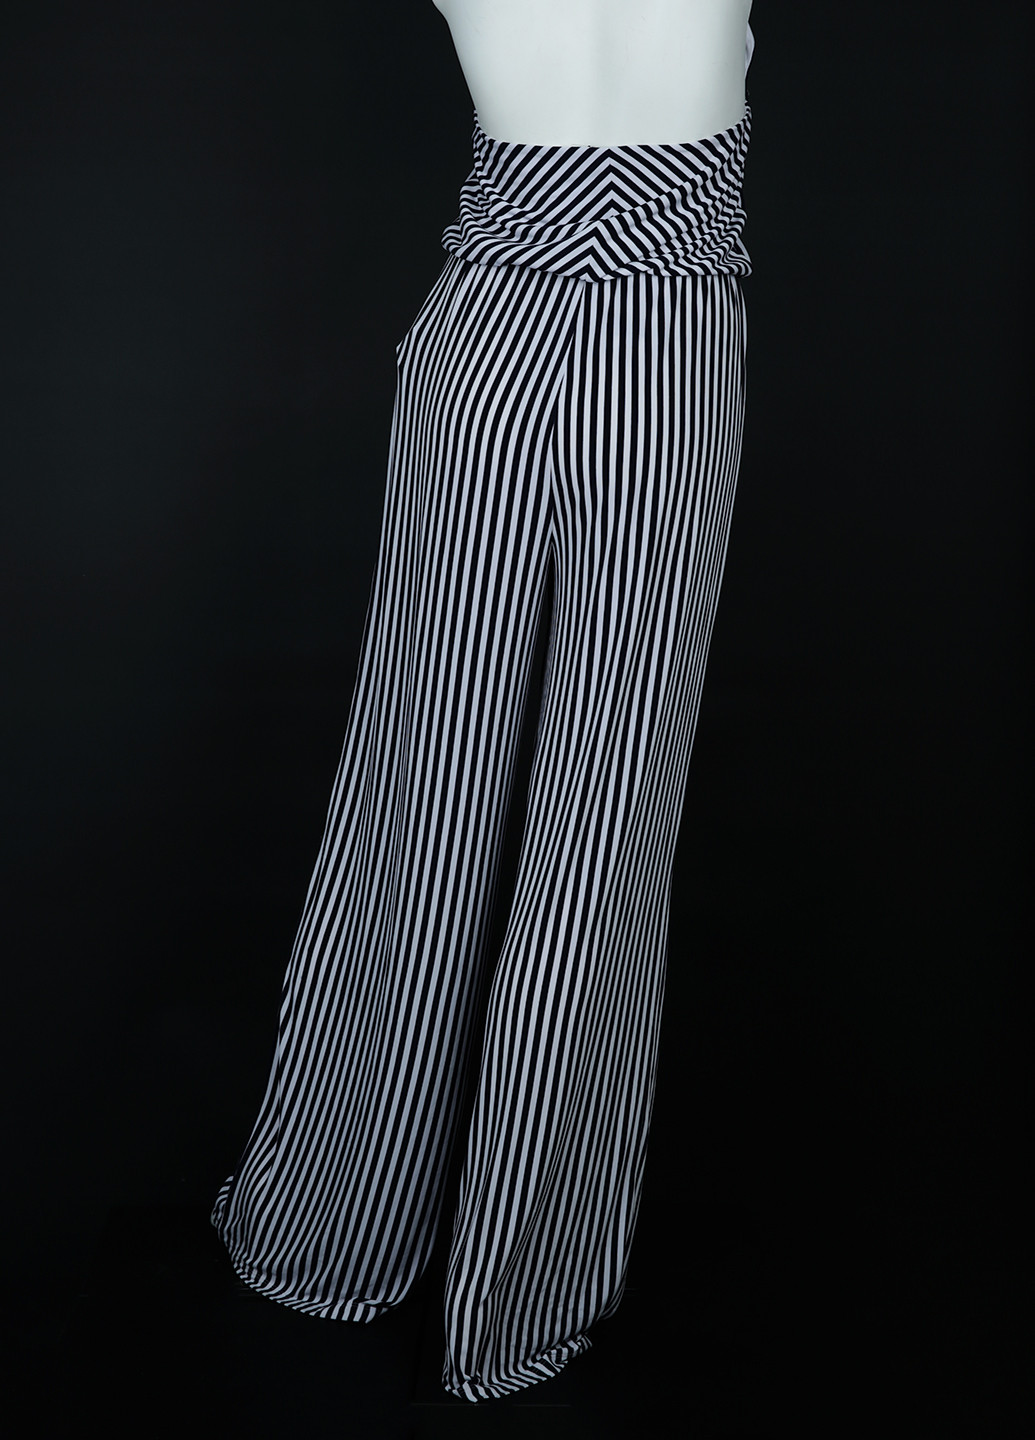 Комбинезон Ralph Lauren комбинезон-брюки полоска чёрно-белого кэжуал полиэстер